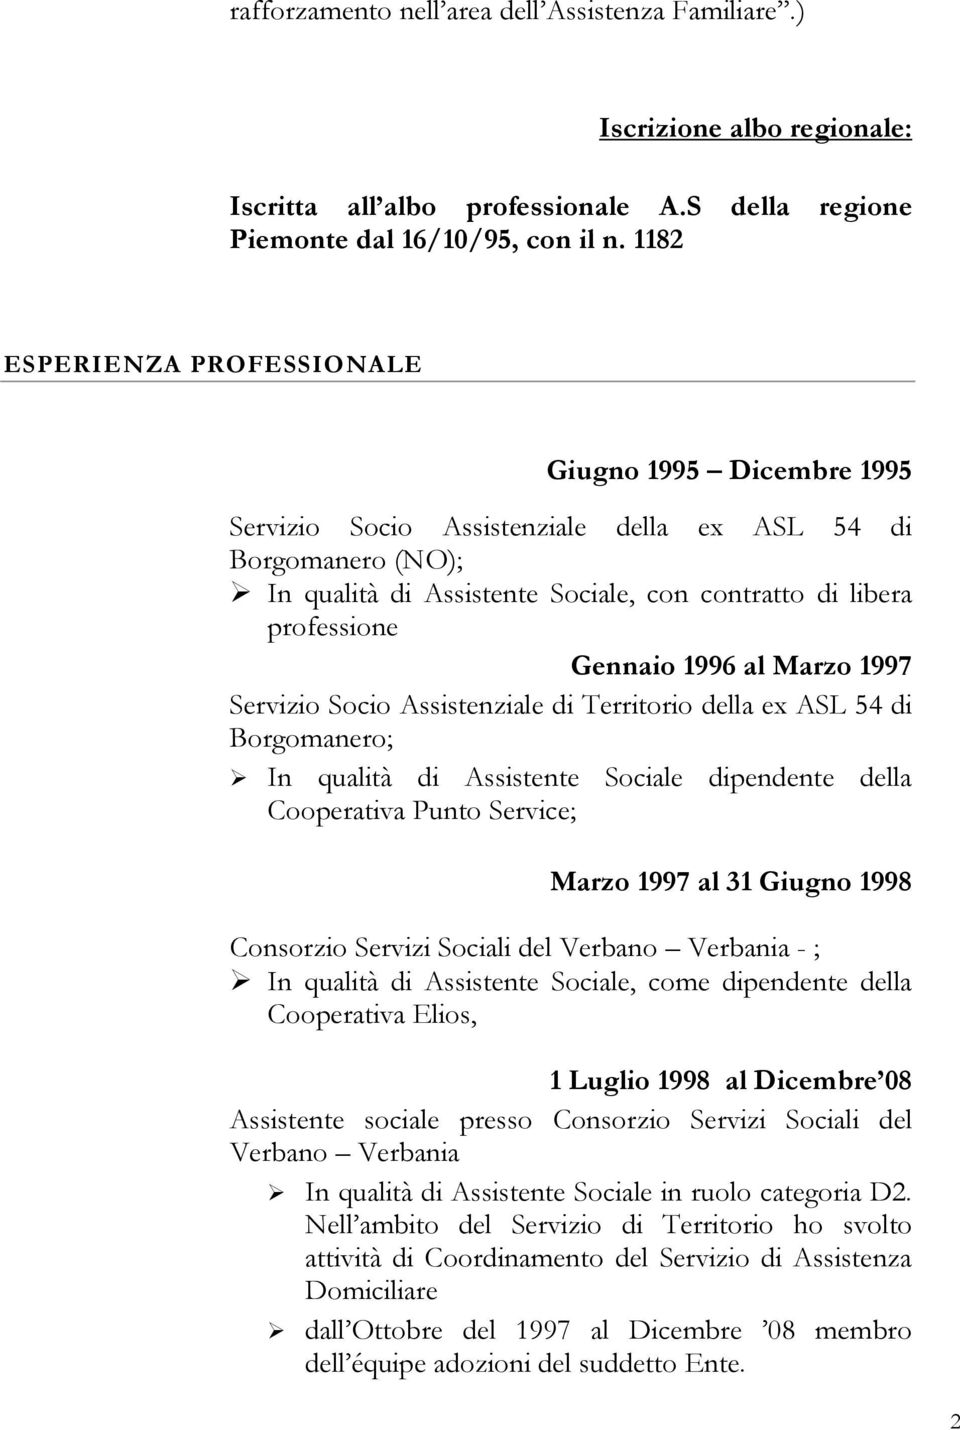 1996 al Marzo 1997 Servizio Socio Assistenziale di Territorio della ex ASL 54 di Borgomanero; In qualità di Assistente Sociale dipendente della Cooperativa Punto Service; Marzo 1997 al 31 Giugno 1998